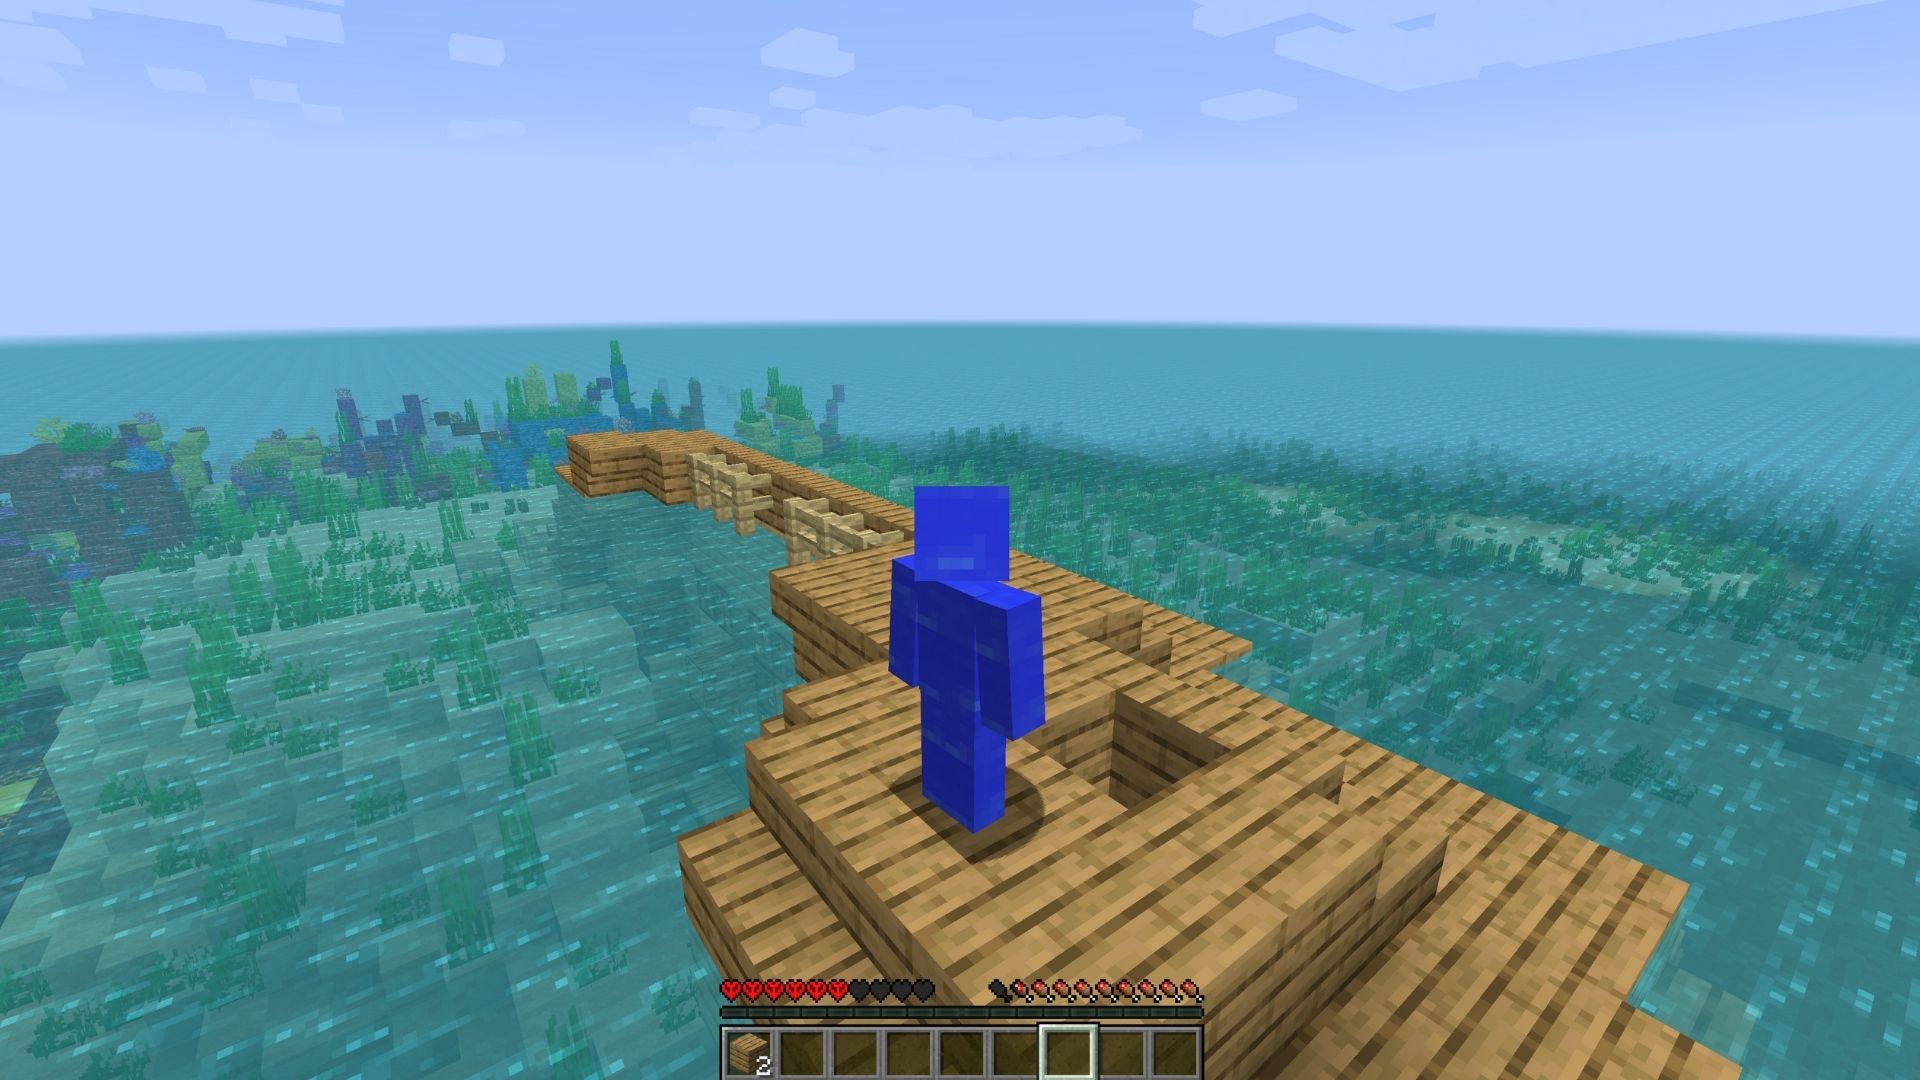 ตัวละคร Minecraft อยู่กลางแผนที่ Water World